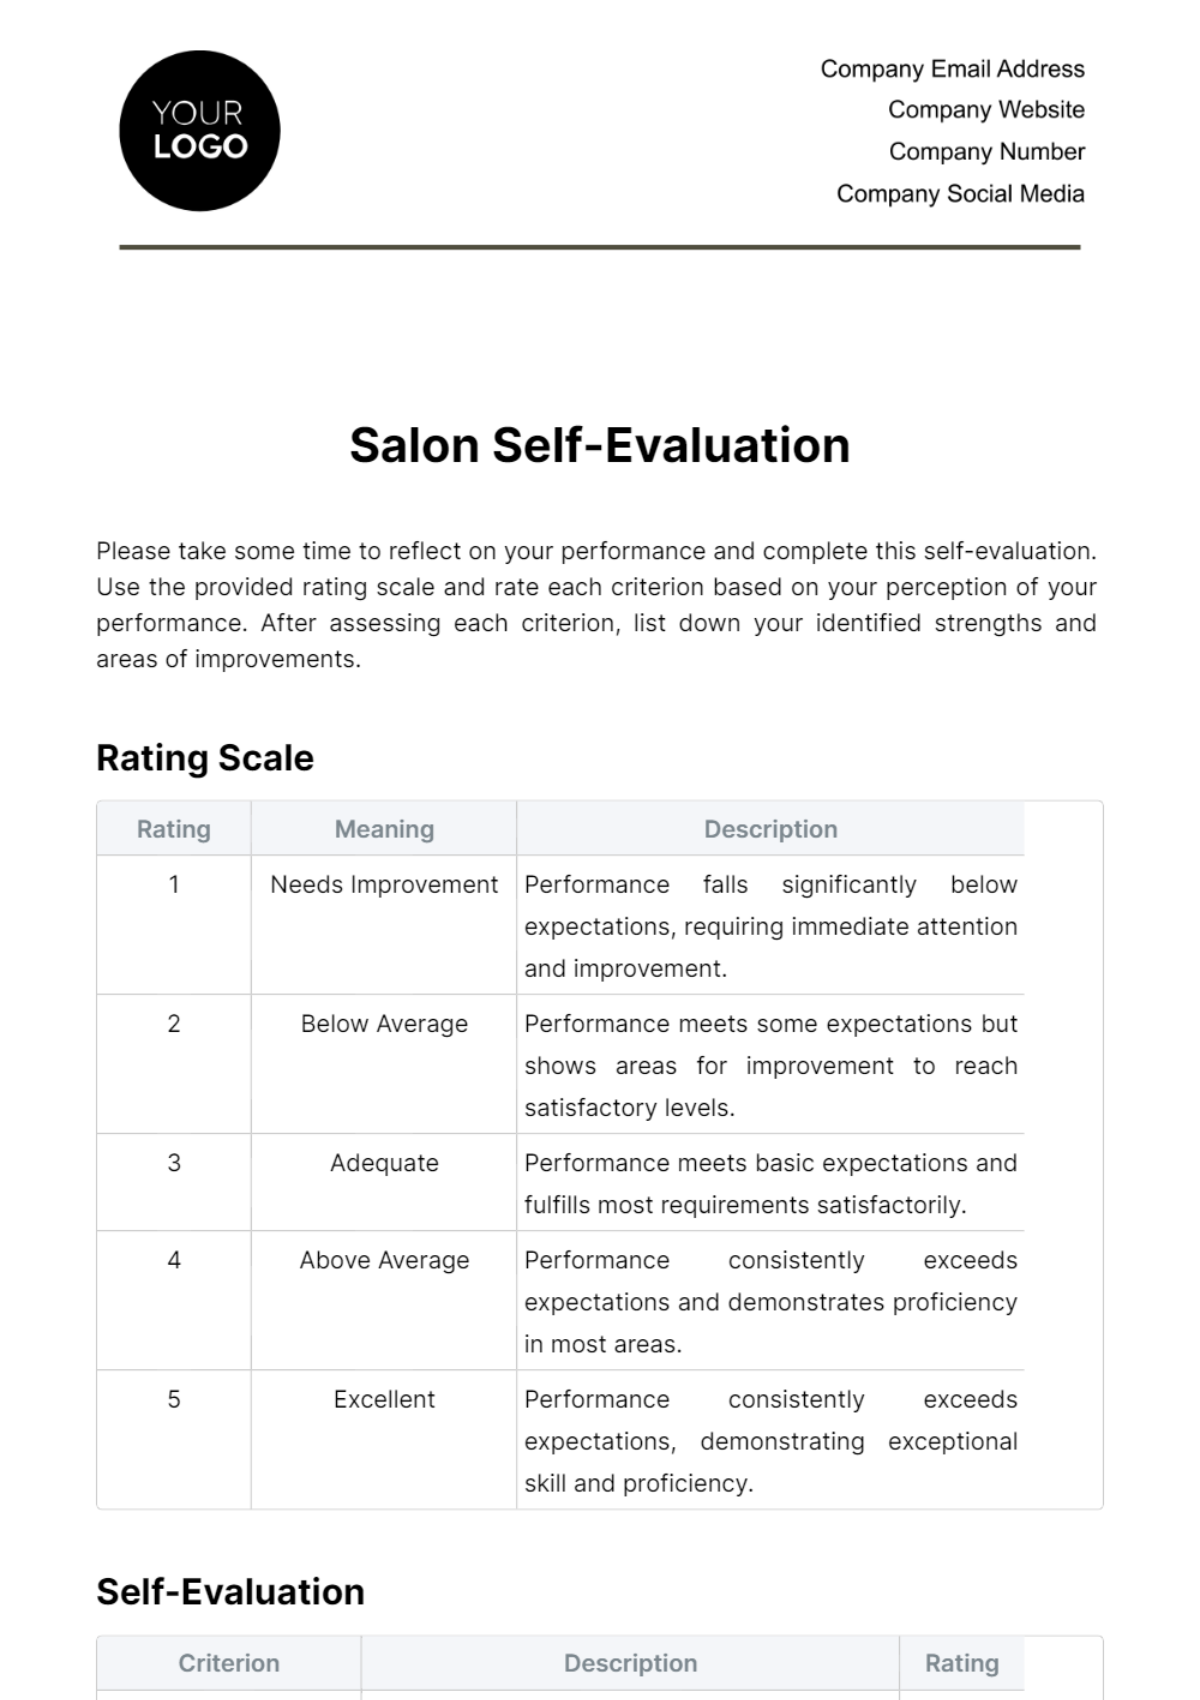 Free Salon Self-Evaluation Template